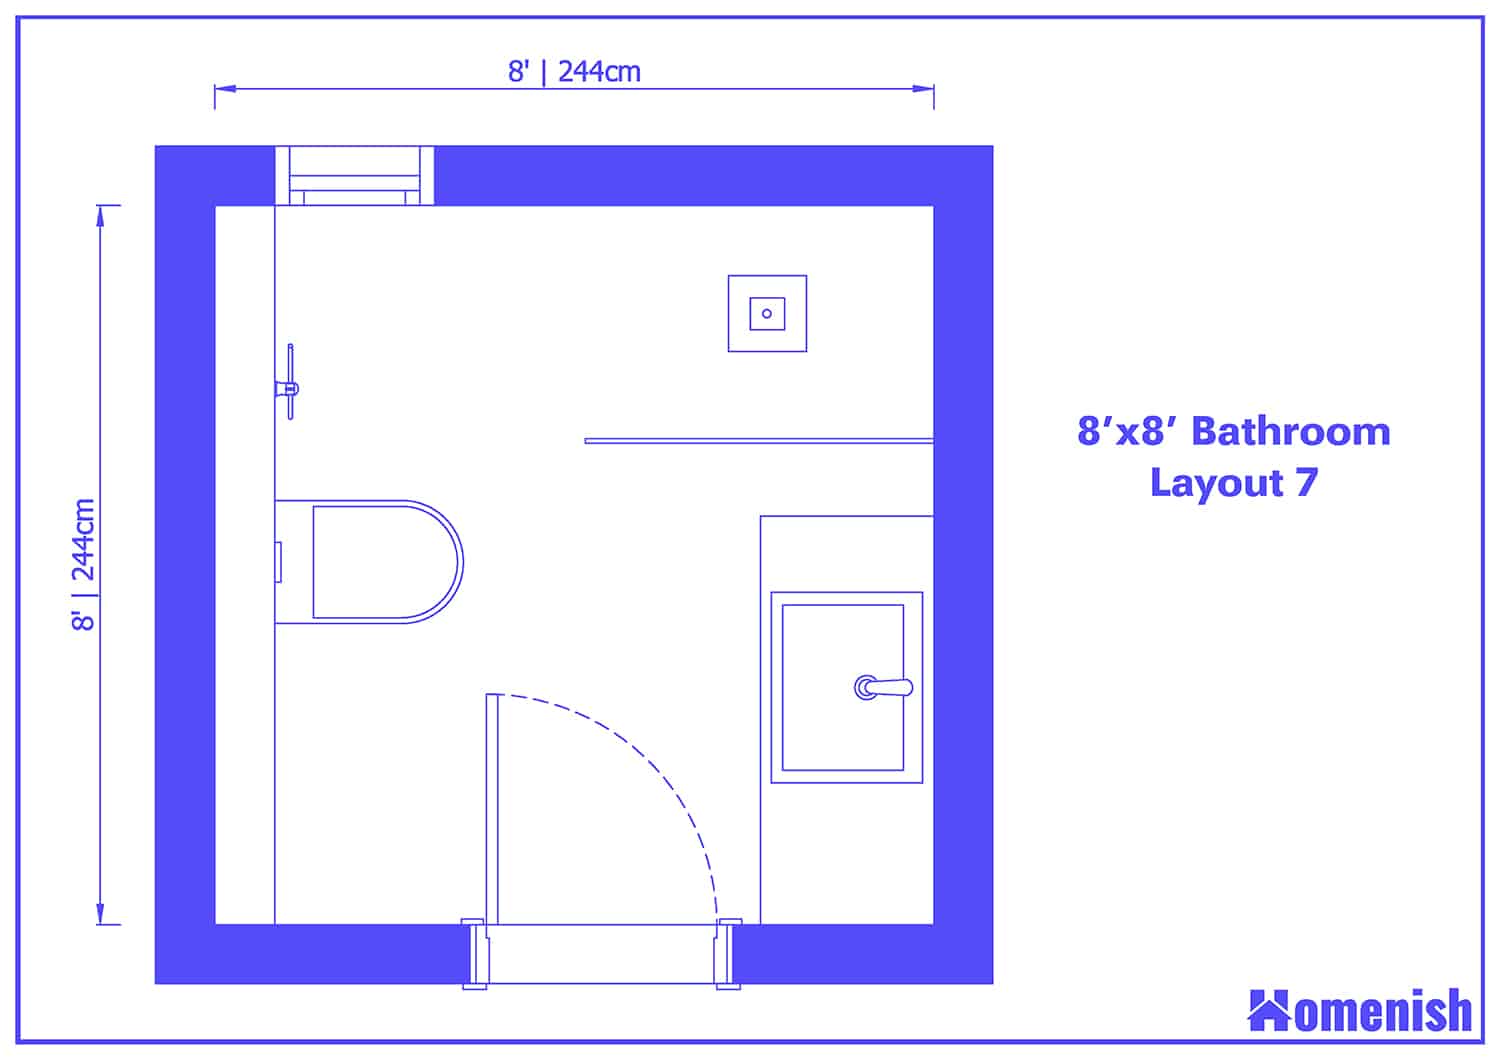 8' x 8' Bathroom Layout 7